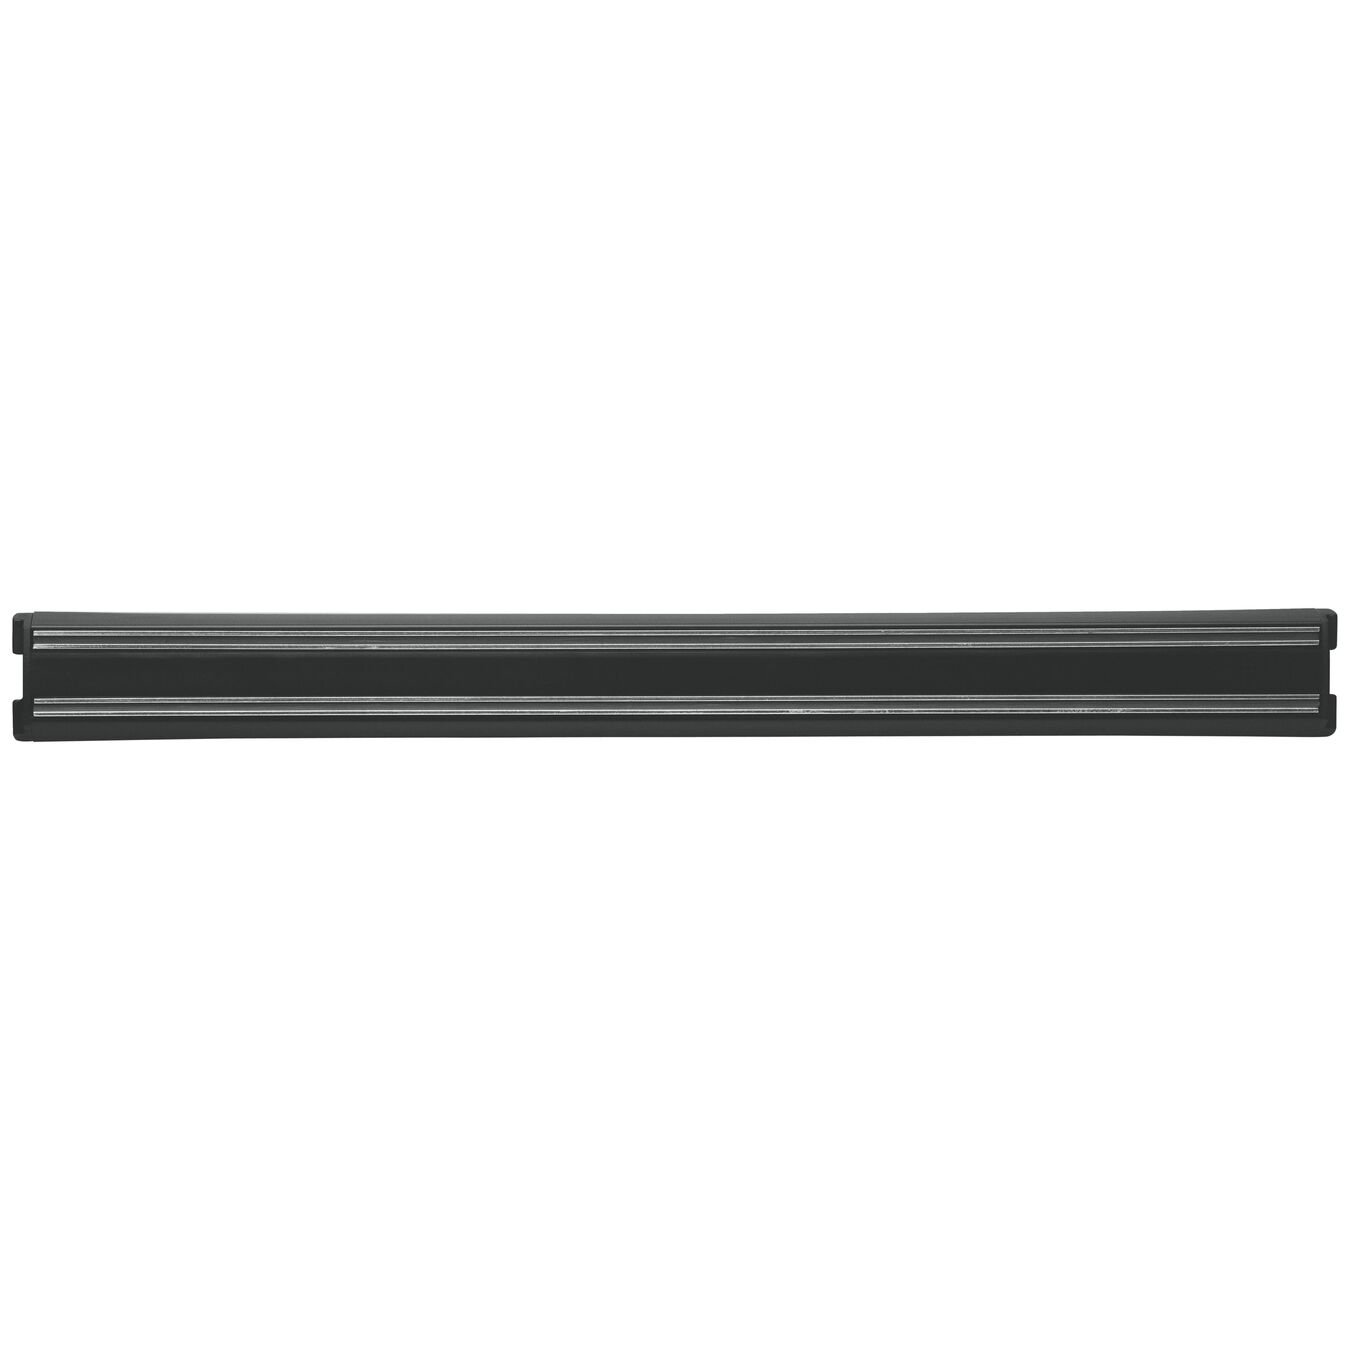 17-inch, plastic, Magnetic knife bar, black matte,,large 1